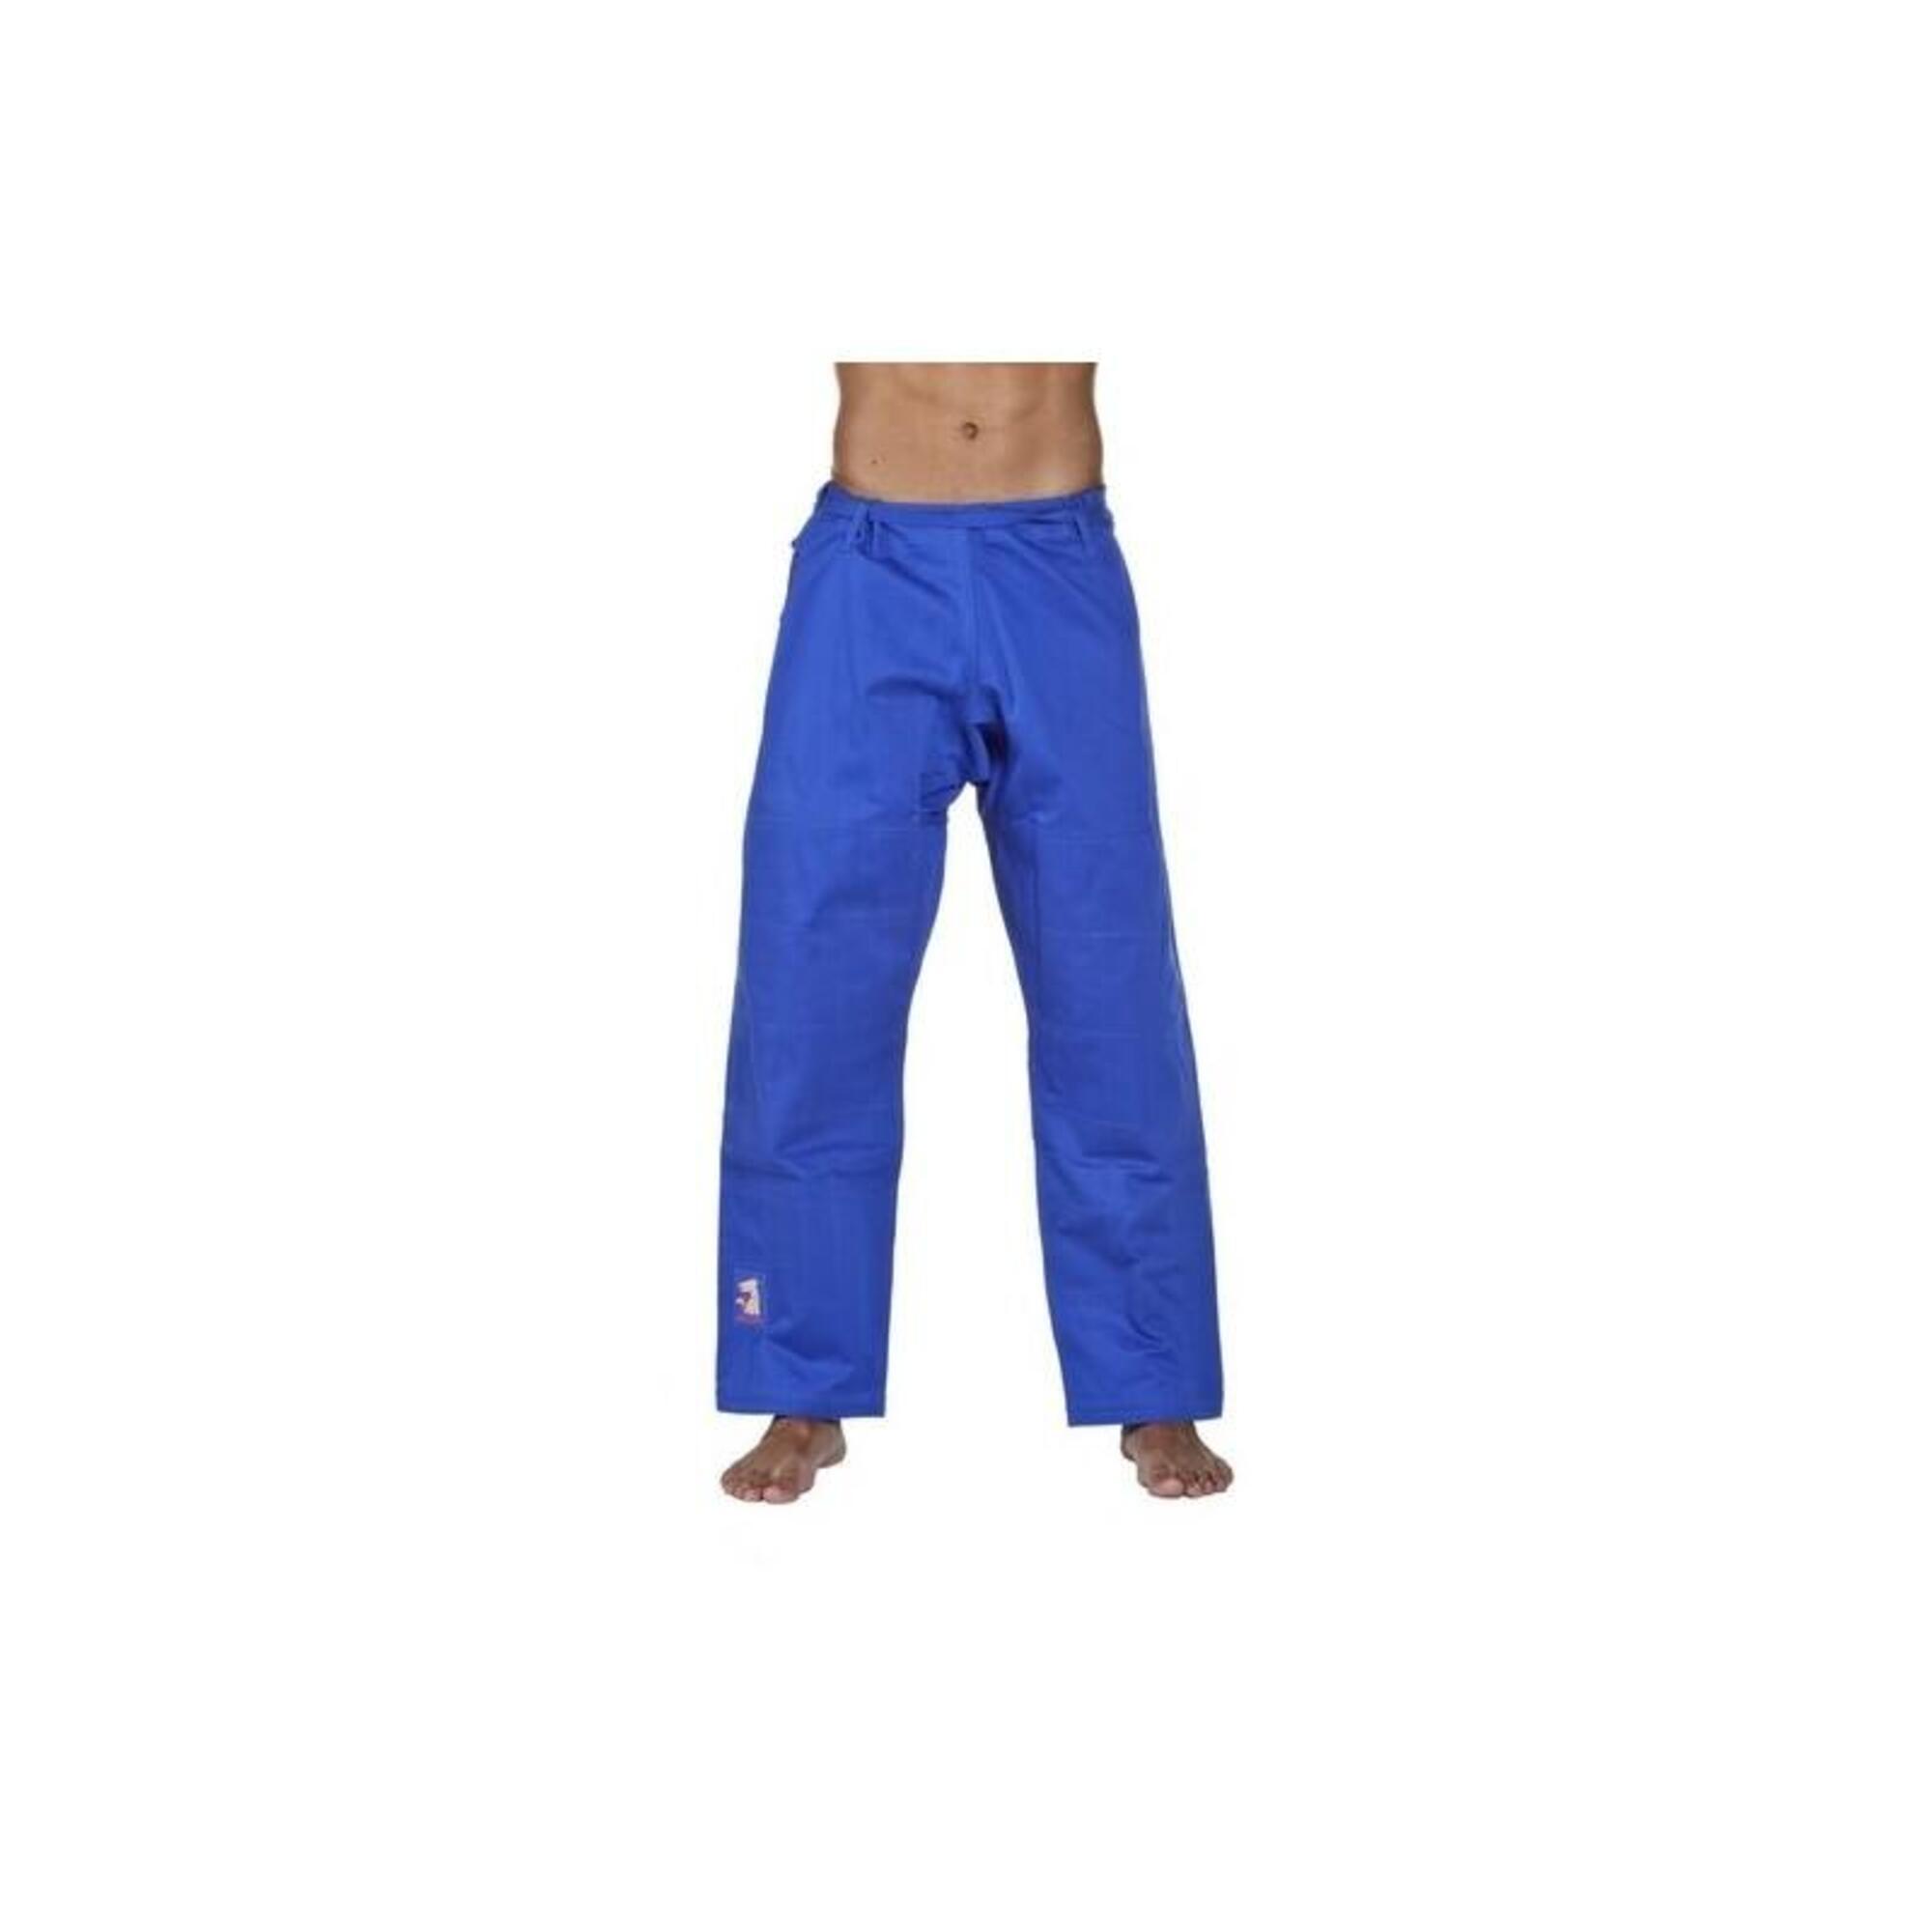 MATSURU Super Judo Pants blauw IJF